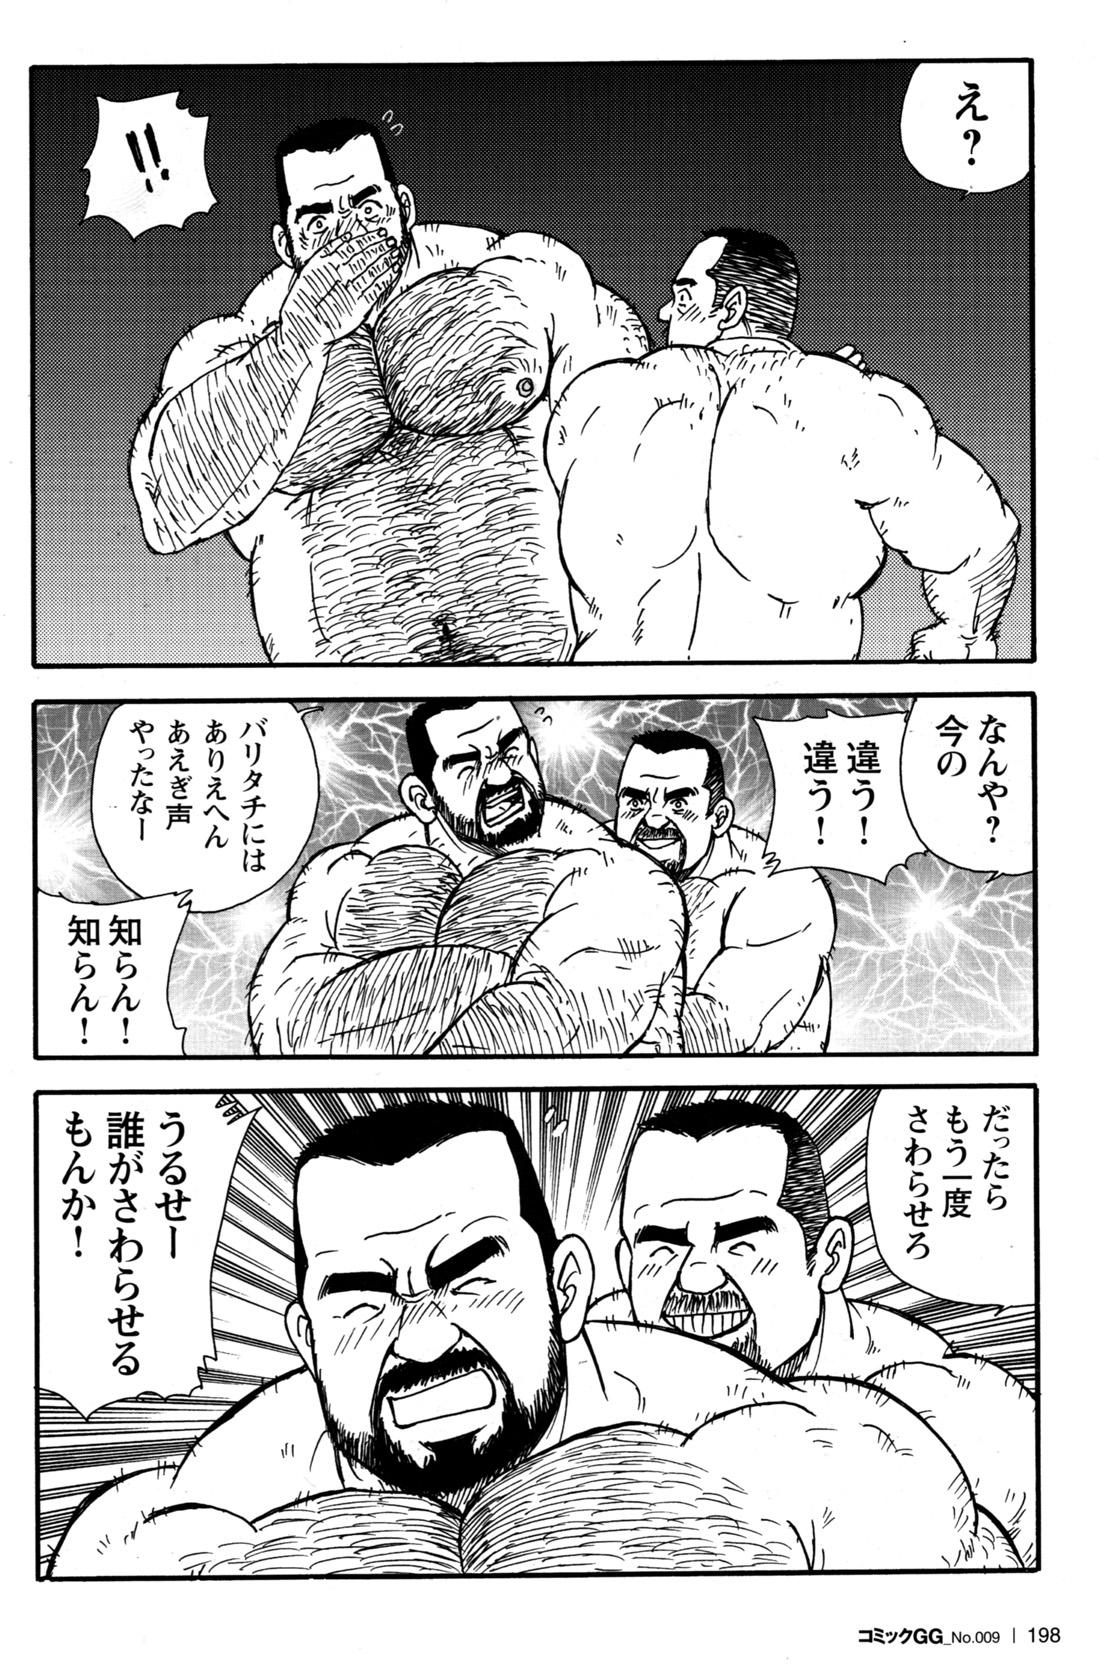 Comic G-men Gaho No.09 Gacchibi Zeme 180